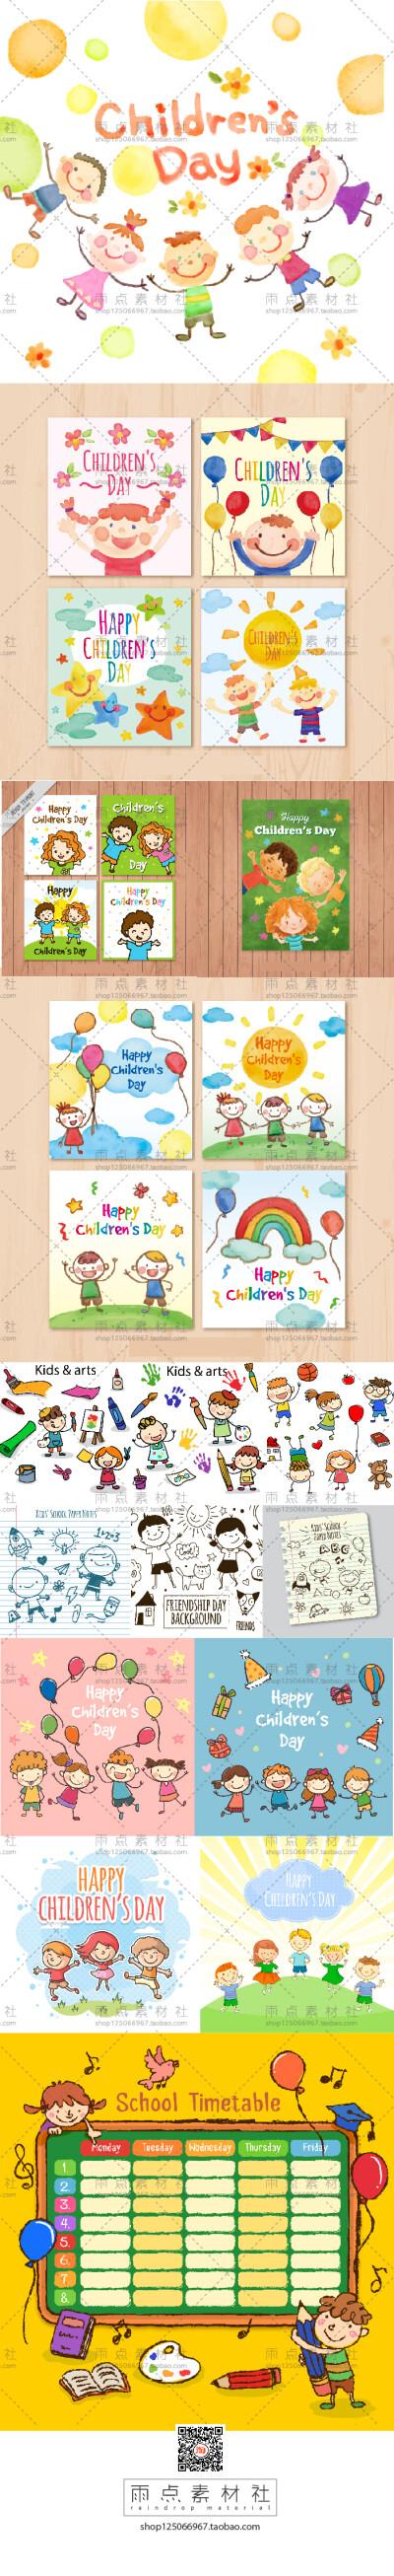 水彩缤纷六一儿童节欢乐插画海报 幼儿园校庆日 ai矢量设计素材